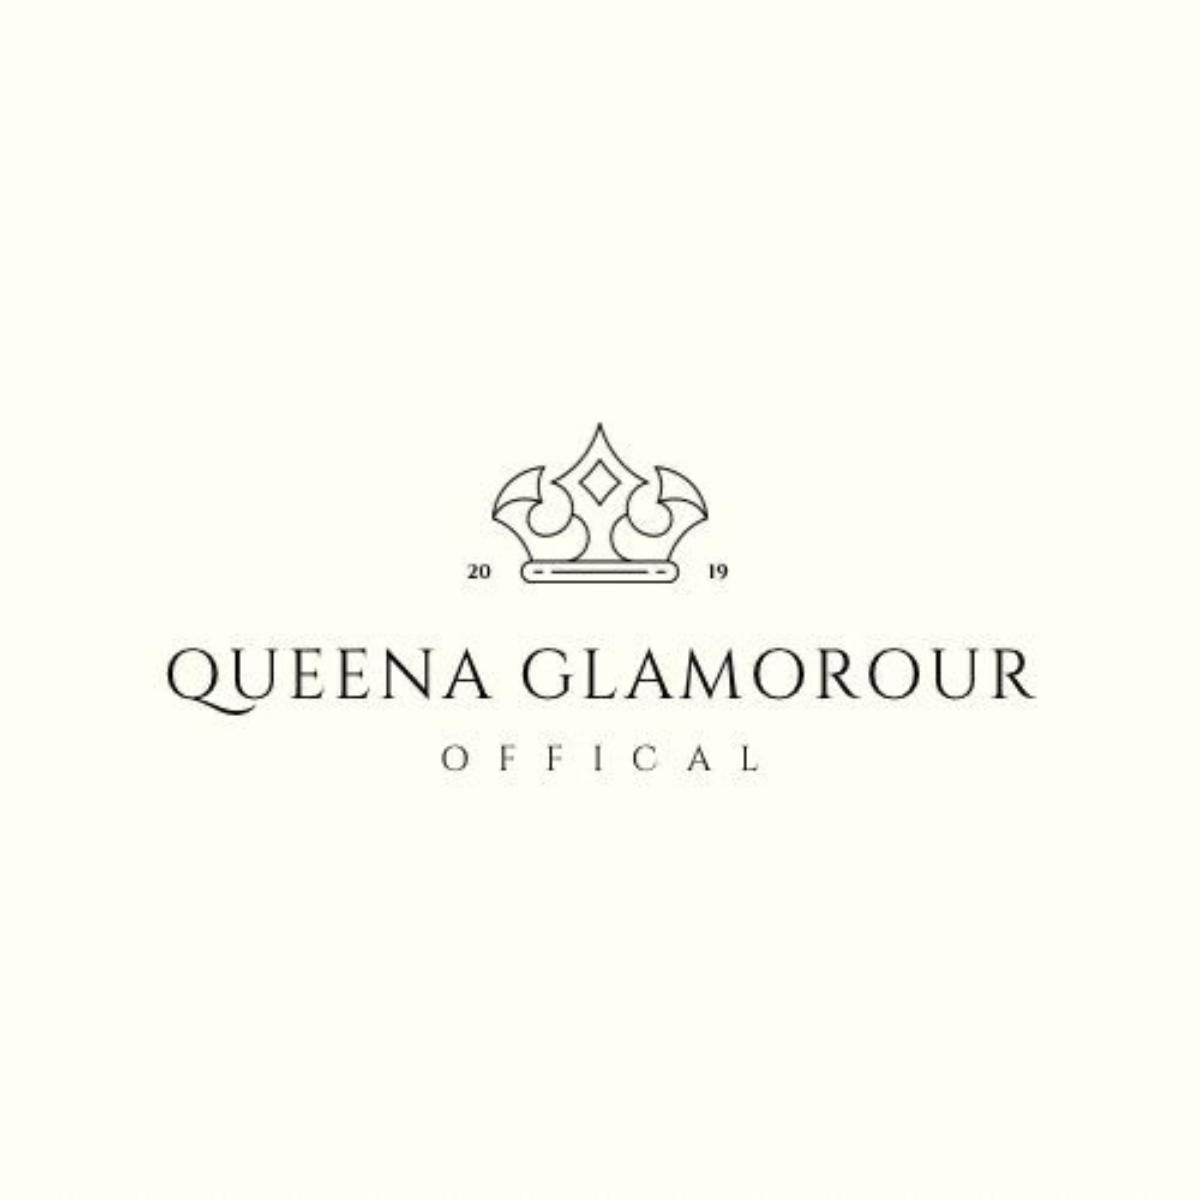 Queen Glamorour